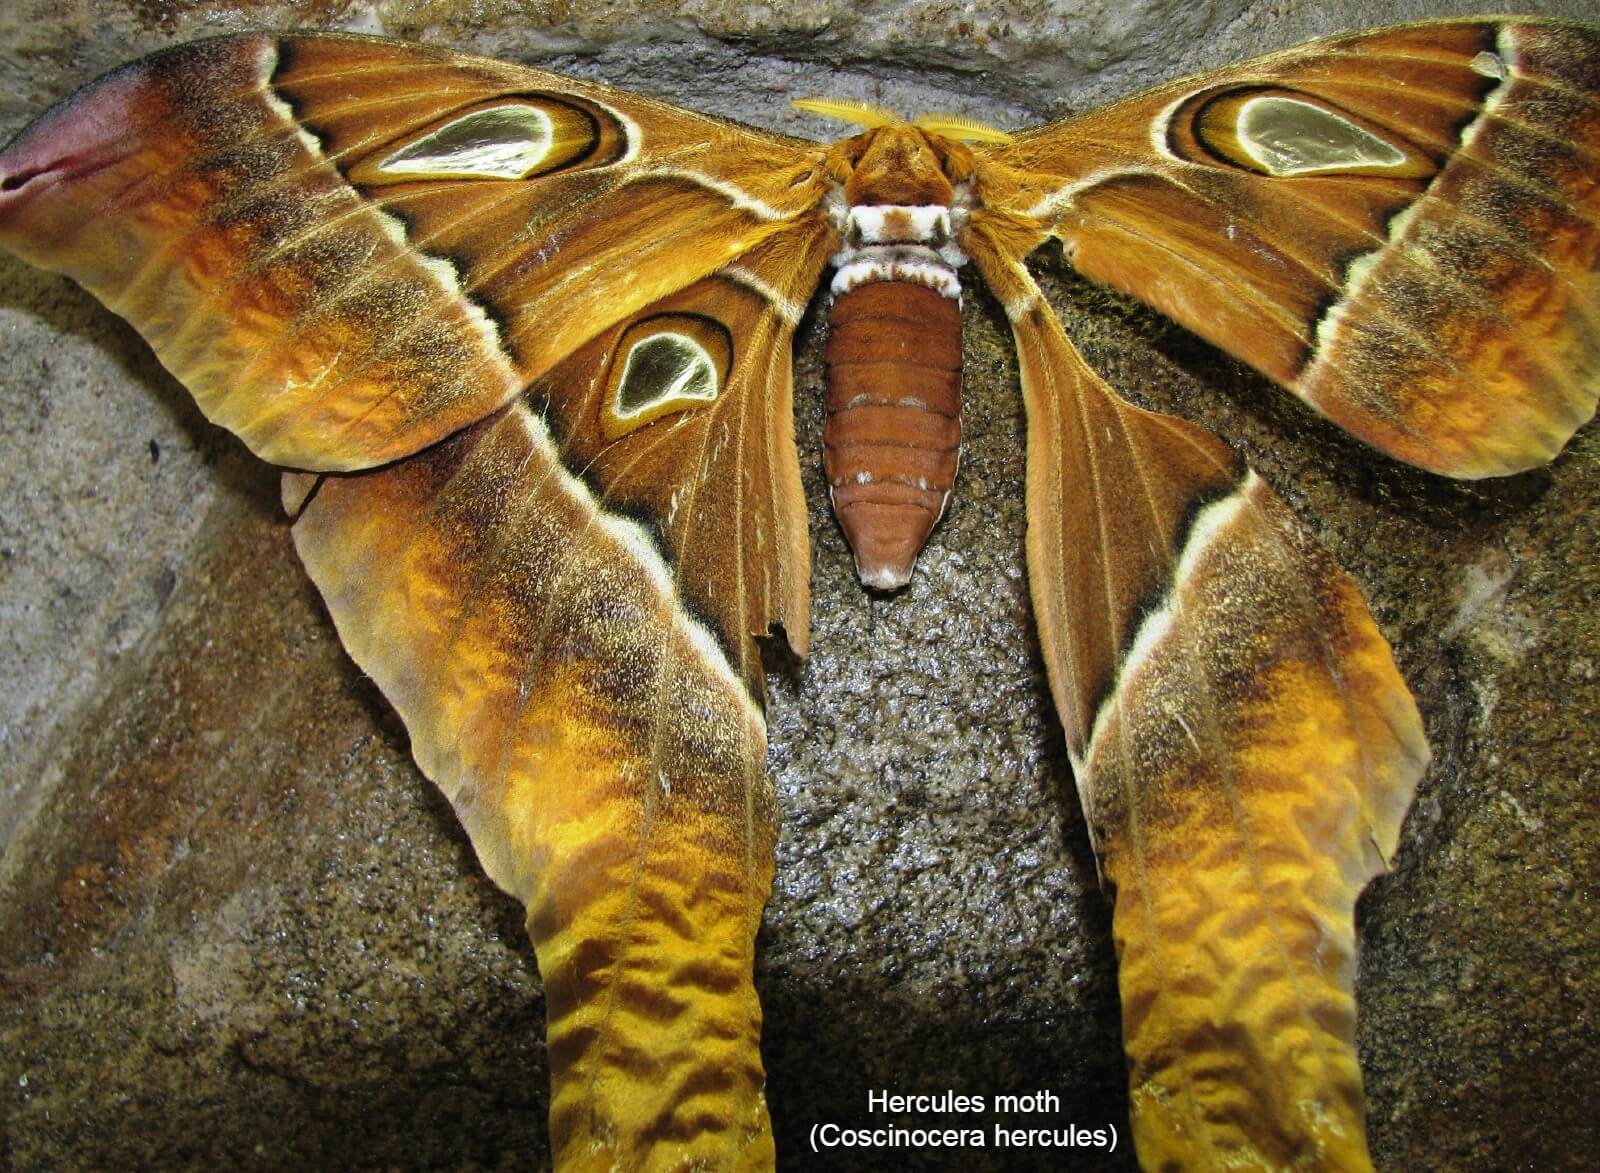 Hercules moth (Coscinocera hercules)